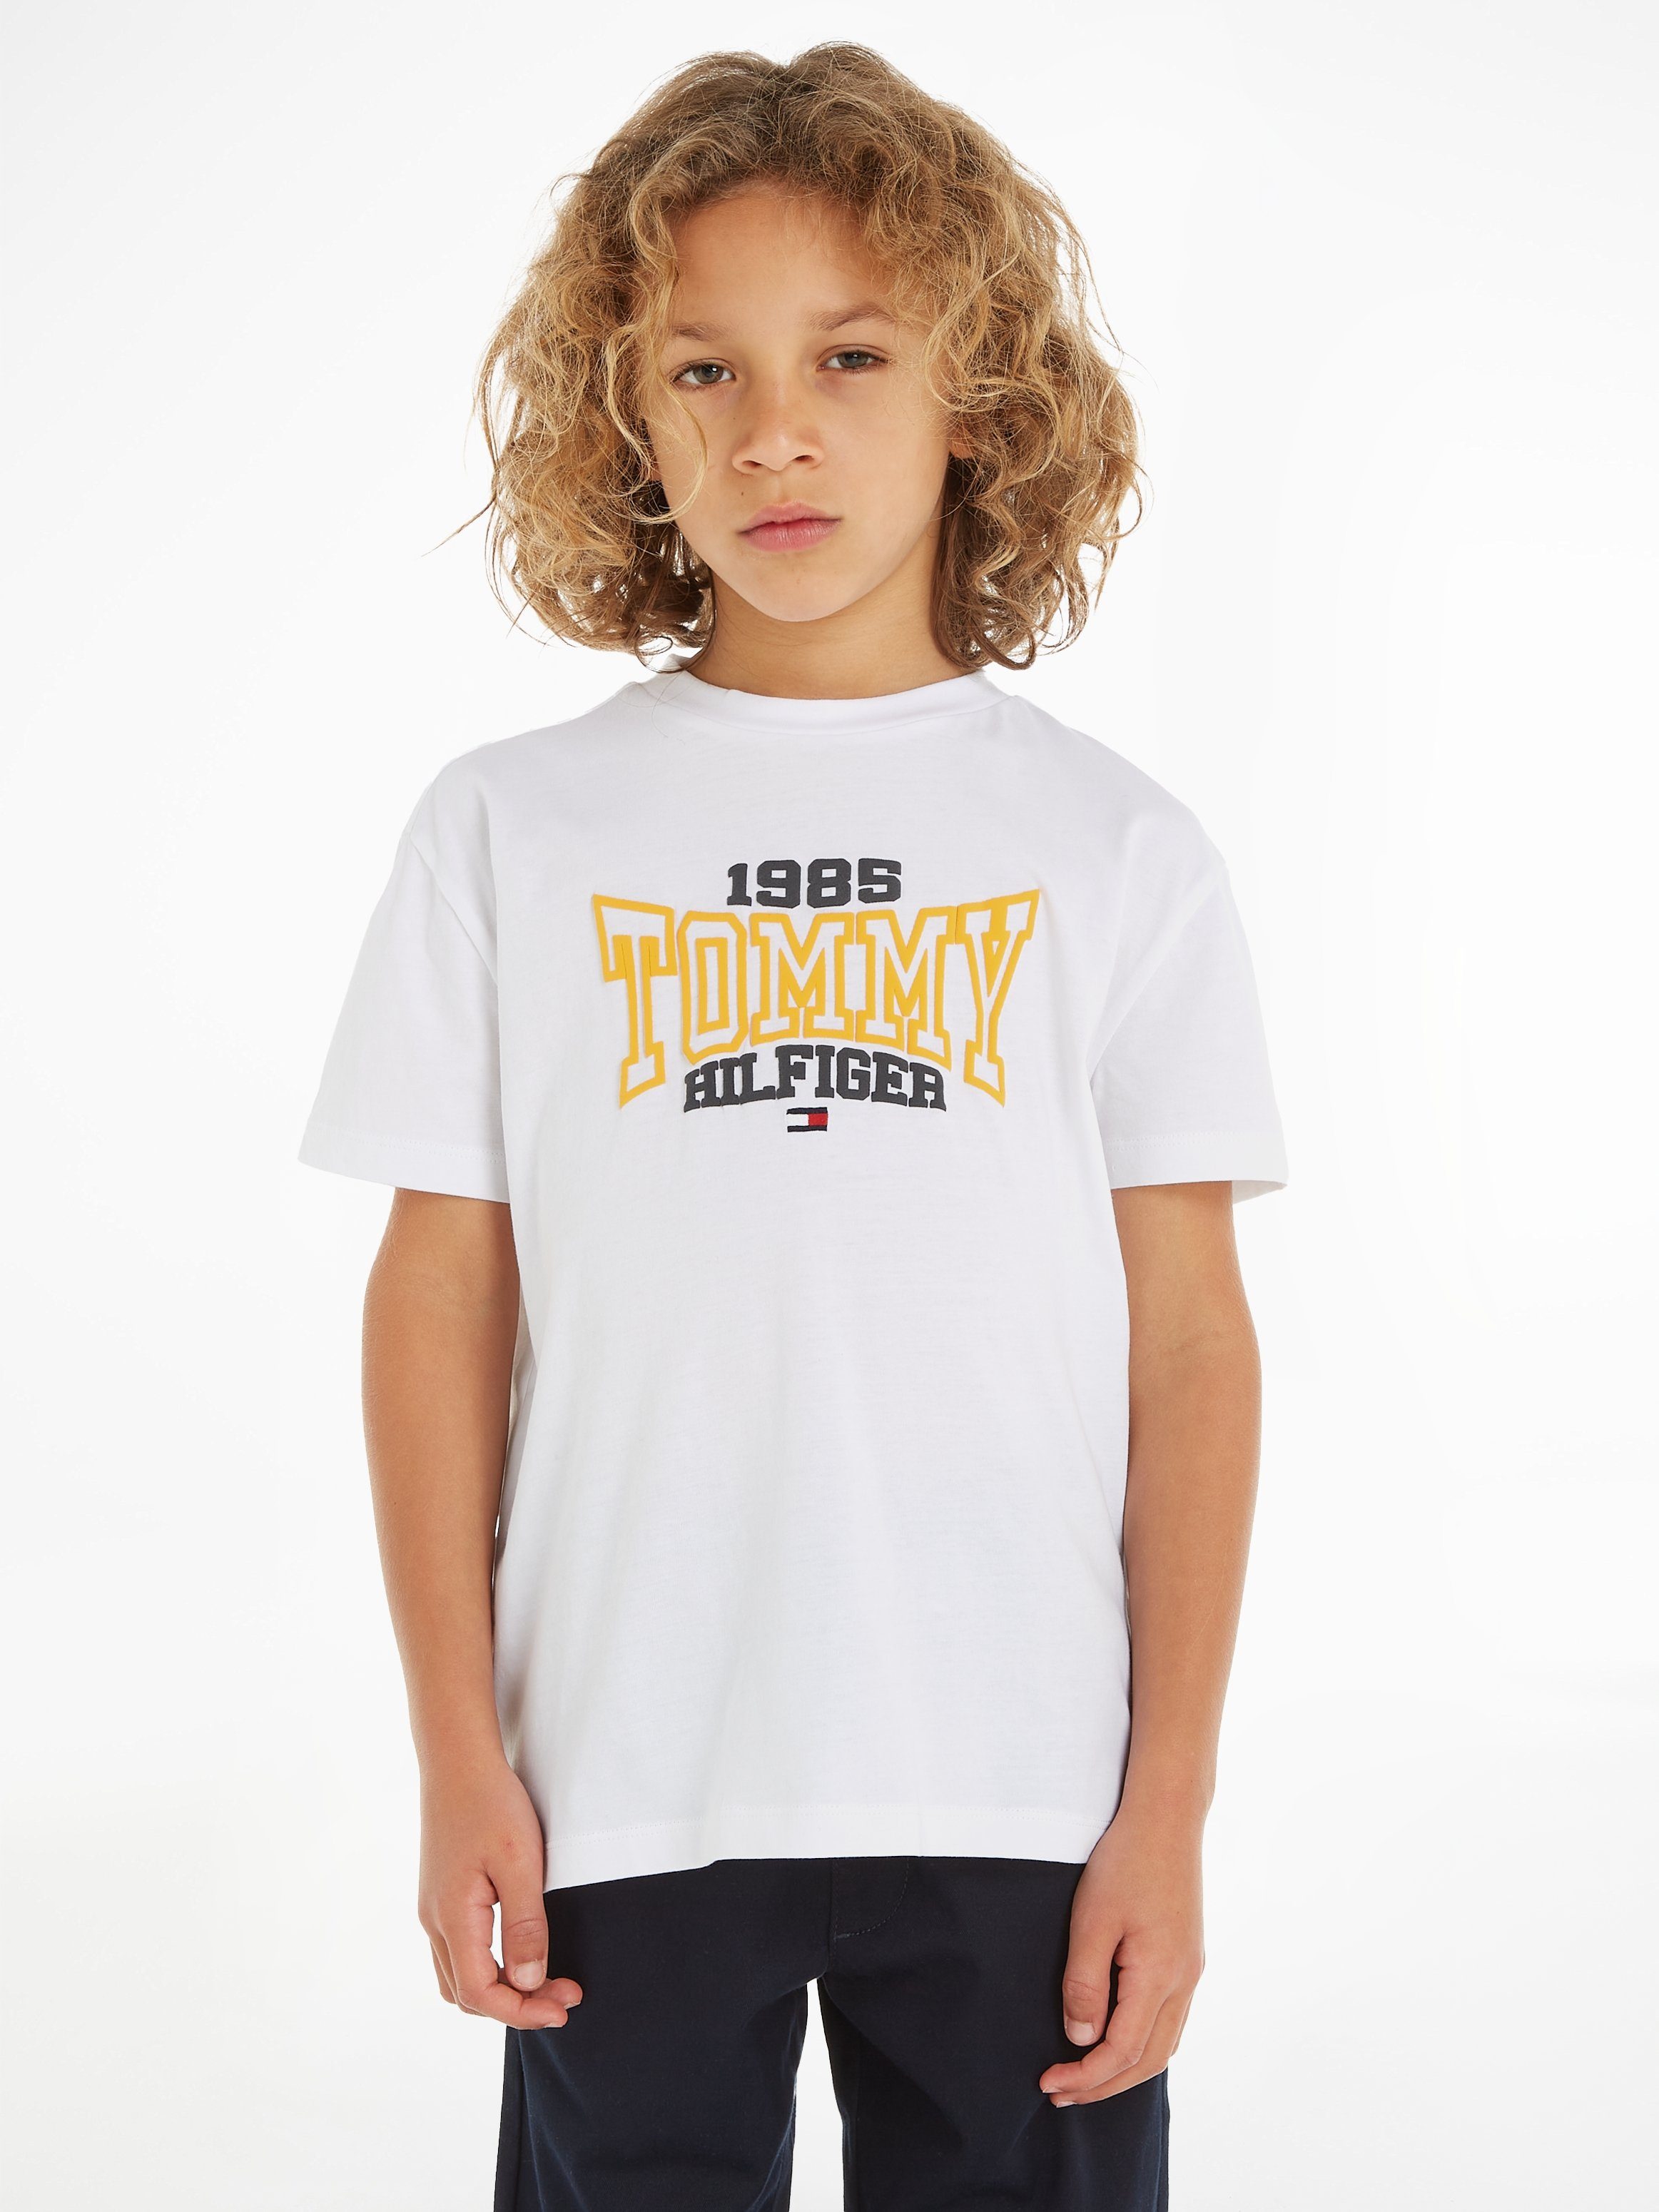 Tommy Hilfiger T-Shirt TOMMY modischem Tommy S/S 1985 1985 Varsity TEE mit White Print VARSITY Hilfgier